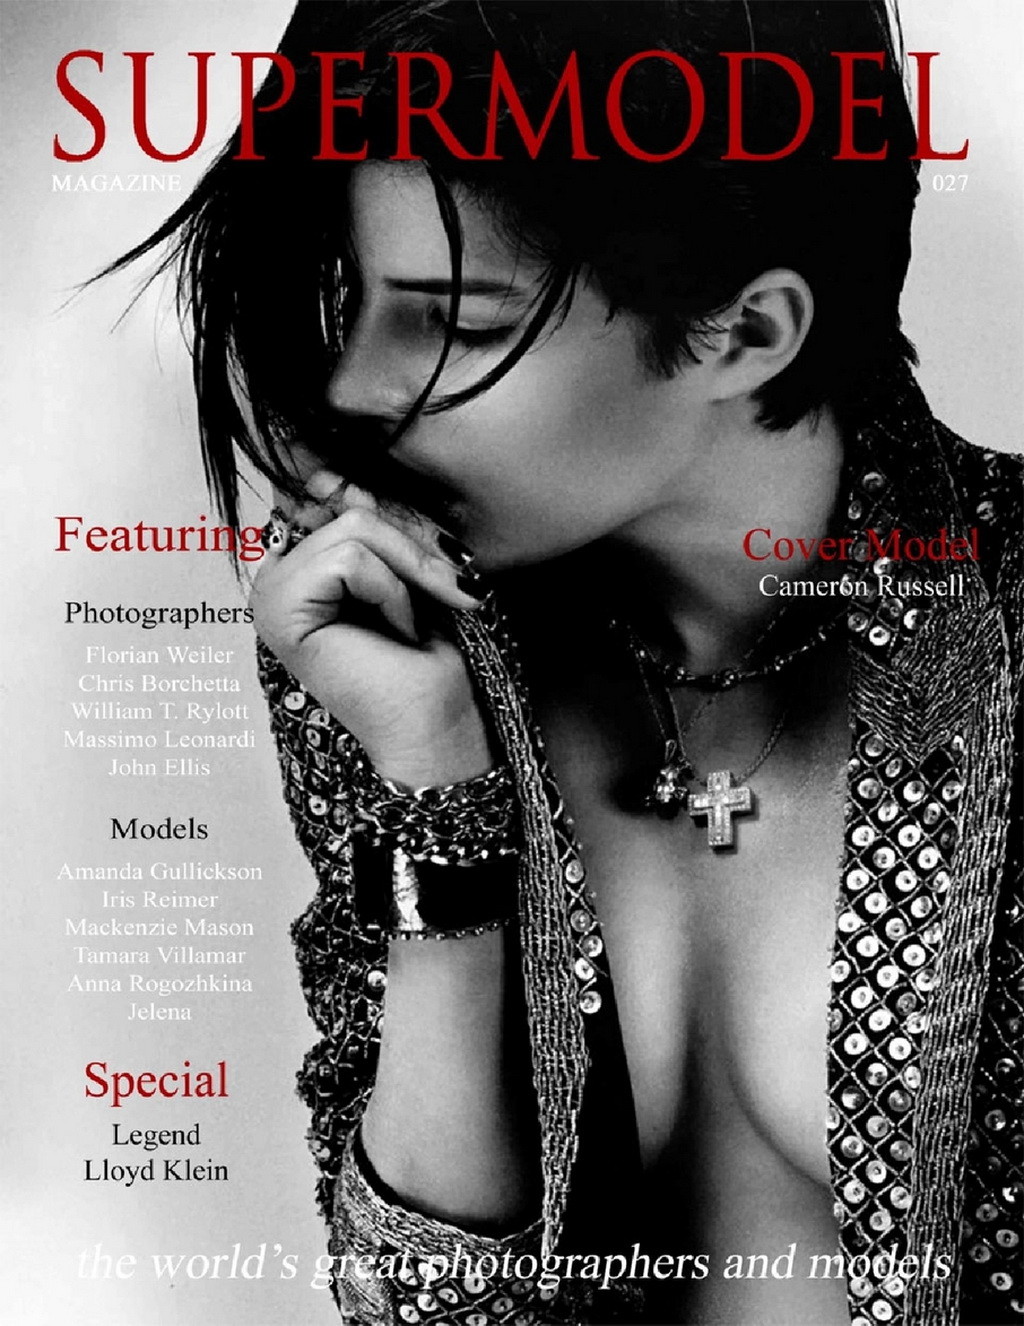 キャメロン・ラッセル、スーパーモデル誌アメリカ版27号の写真撮影で非常にセクシーな姿を披露
 #75170429